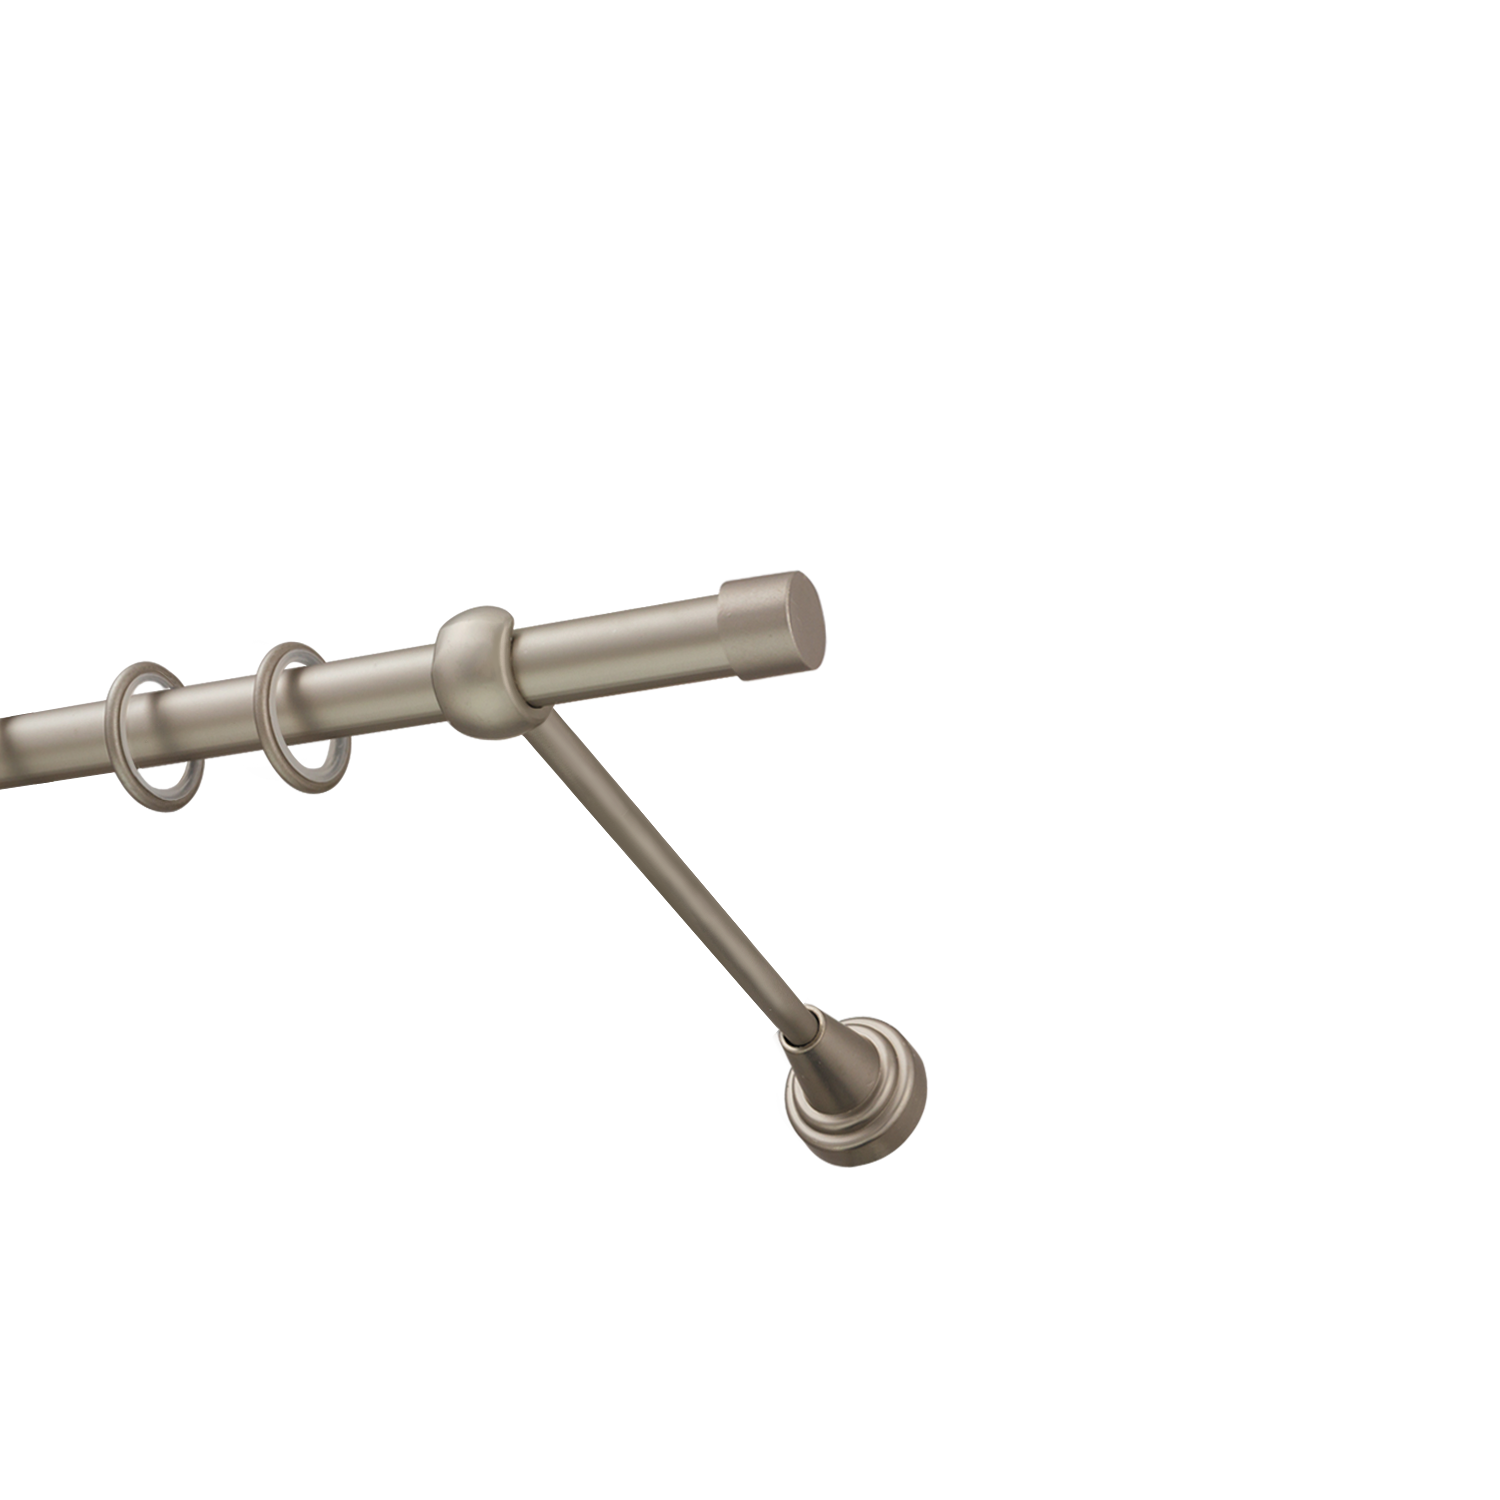 Металлический карниз для штор Заглушка, однорядный 16 мм, сталь, гладкая штанга, длина 140 см - фото Wikidecor.ru